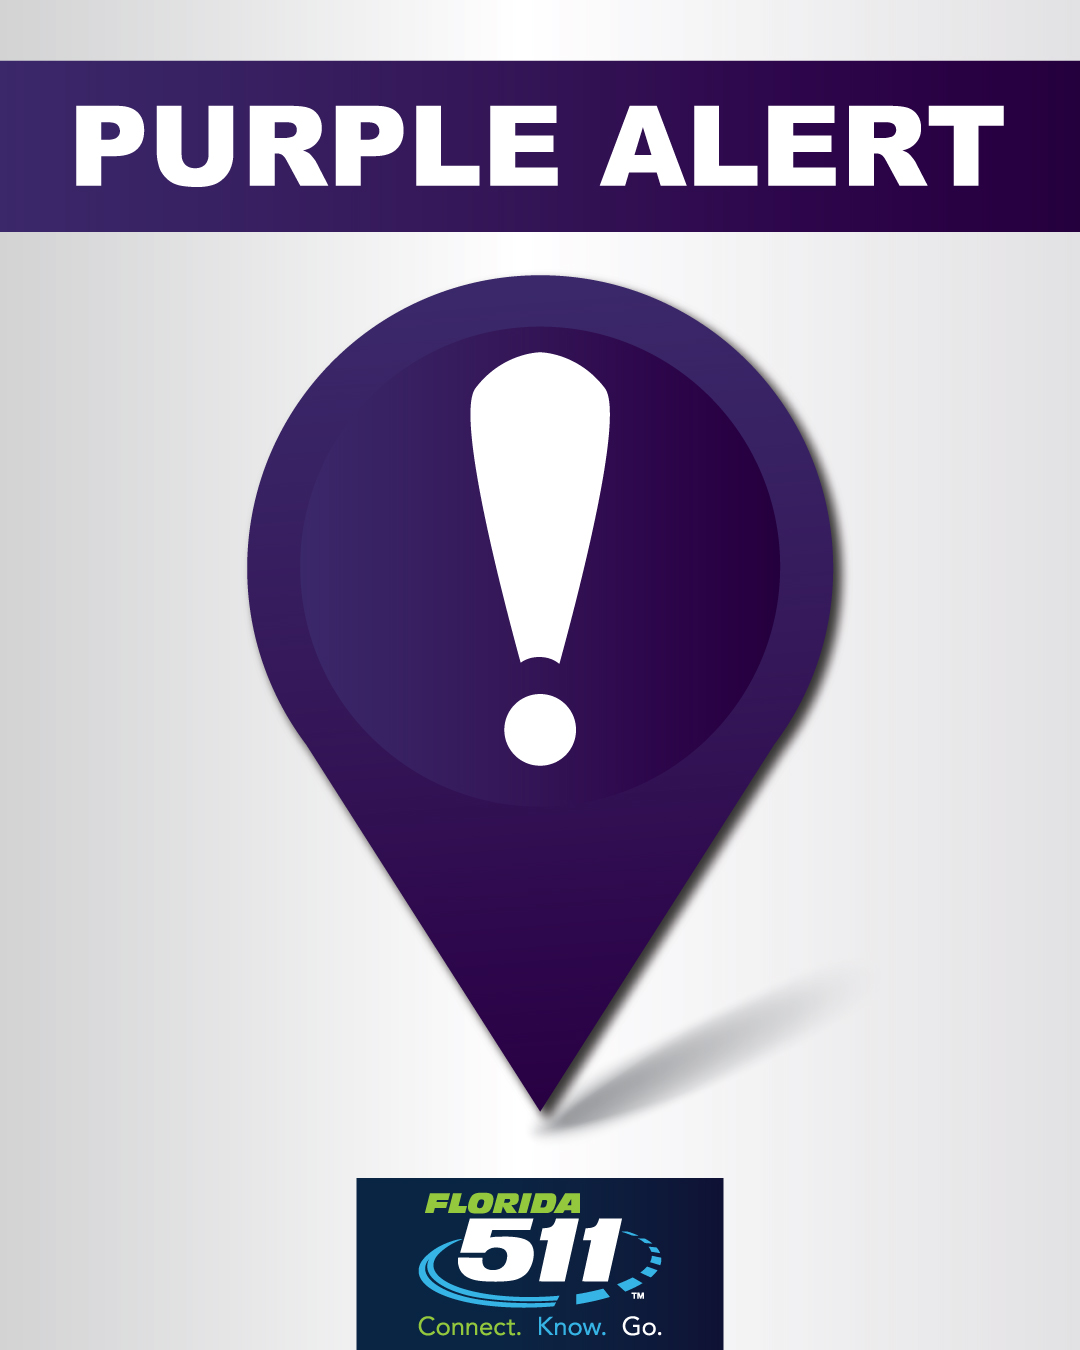 FL511 Now Distributes Purple Alerts